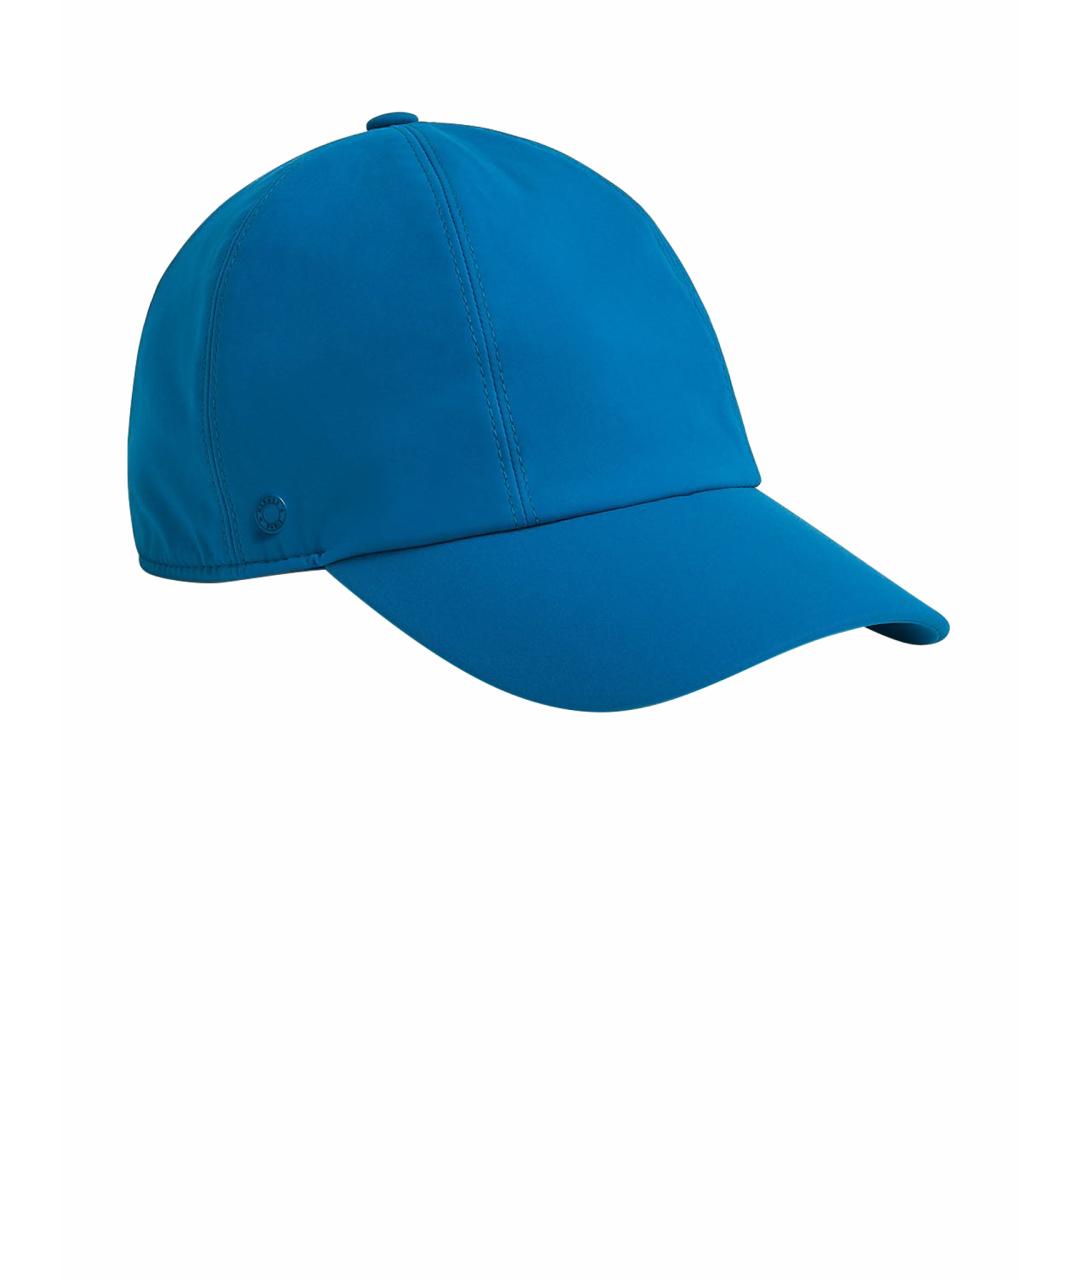 HERMES PRE-OWNED Синяя кепка/бейсболка, фото 1